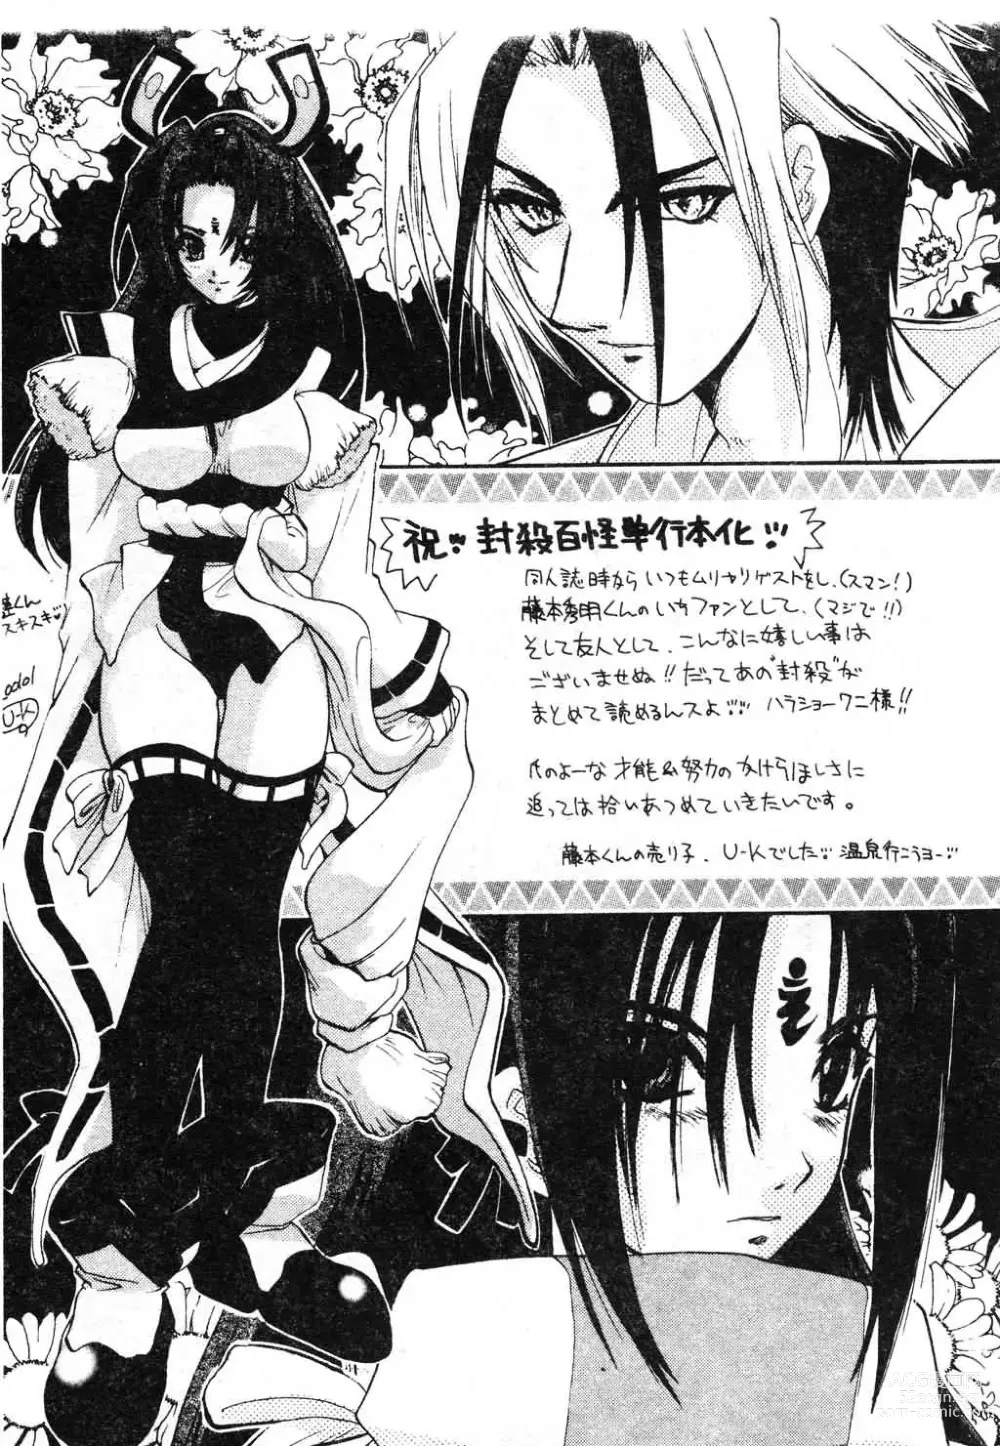 Page 207 of manga Fuusatsu Hyakke